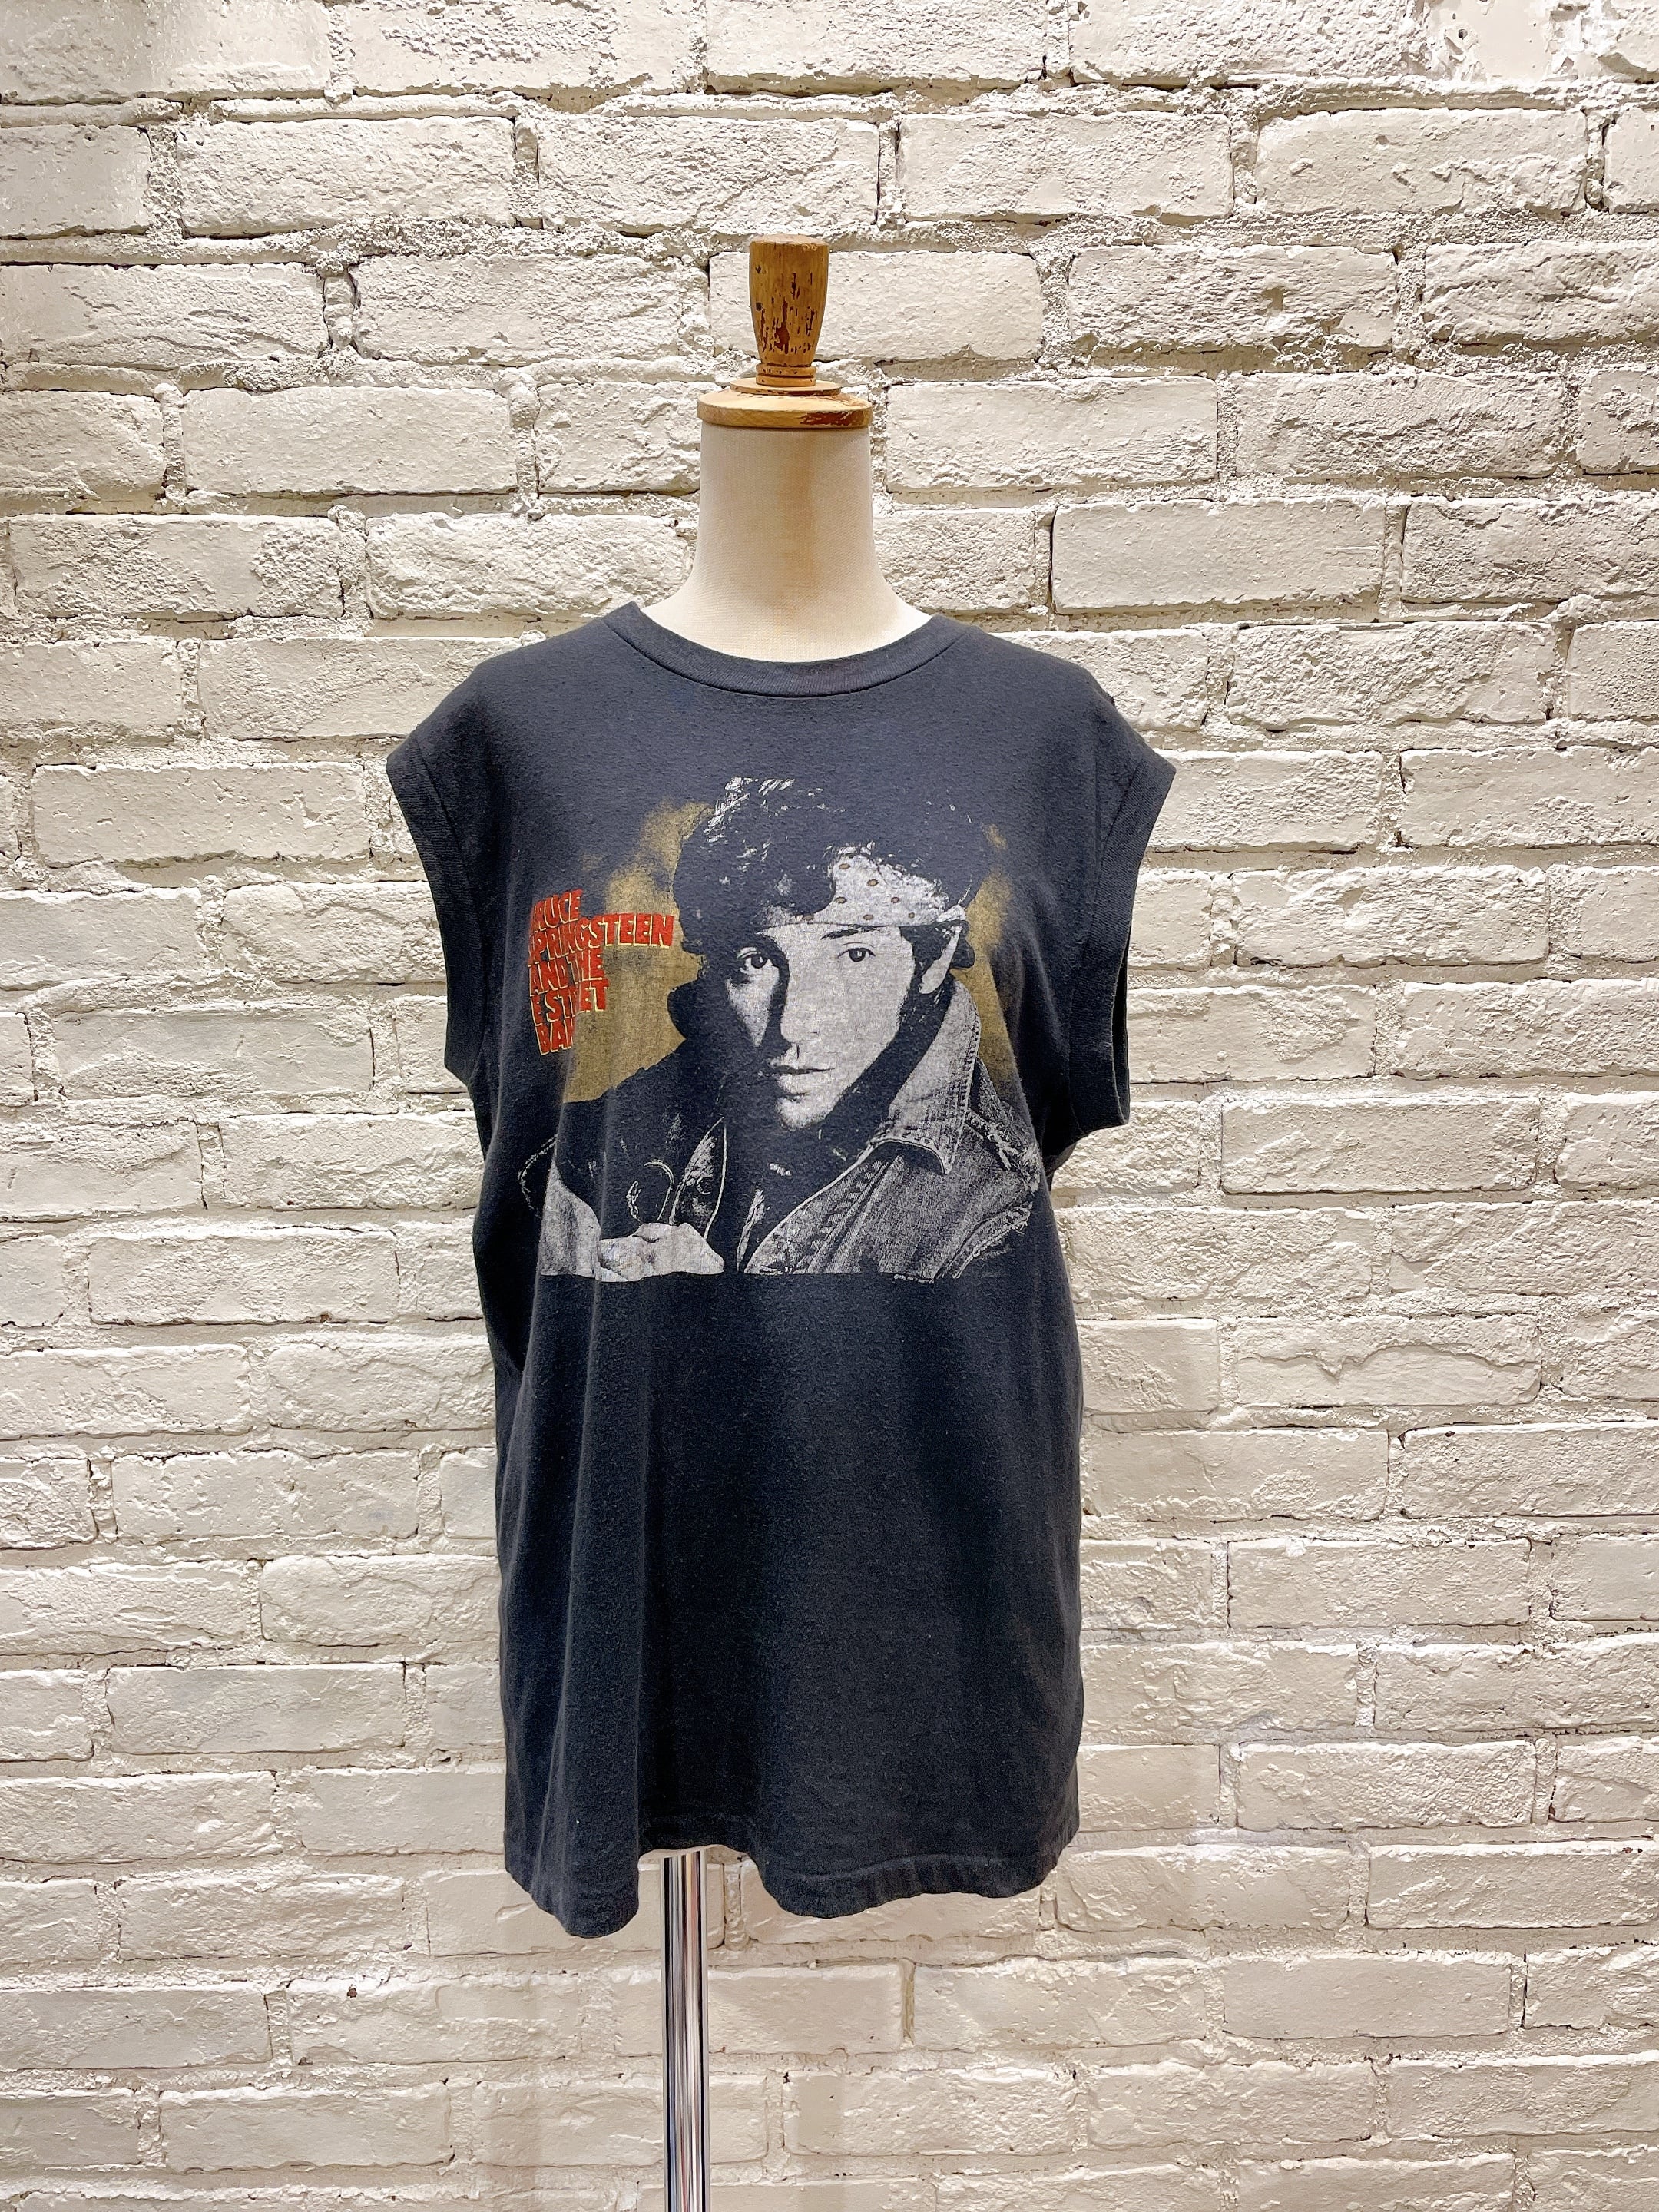 80年代 Bruce Springsteen N/SバンドTシャツ USA製 Used  Vintage Clothing  『VALON』『Lanp』